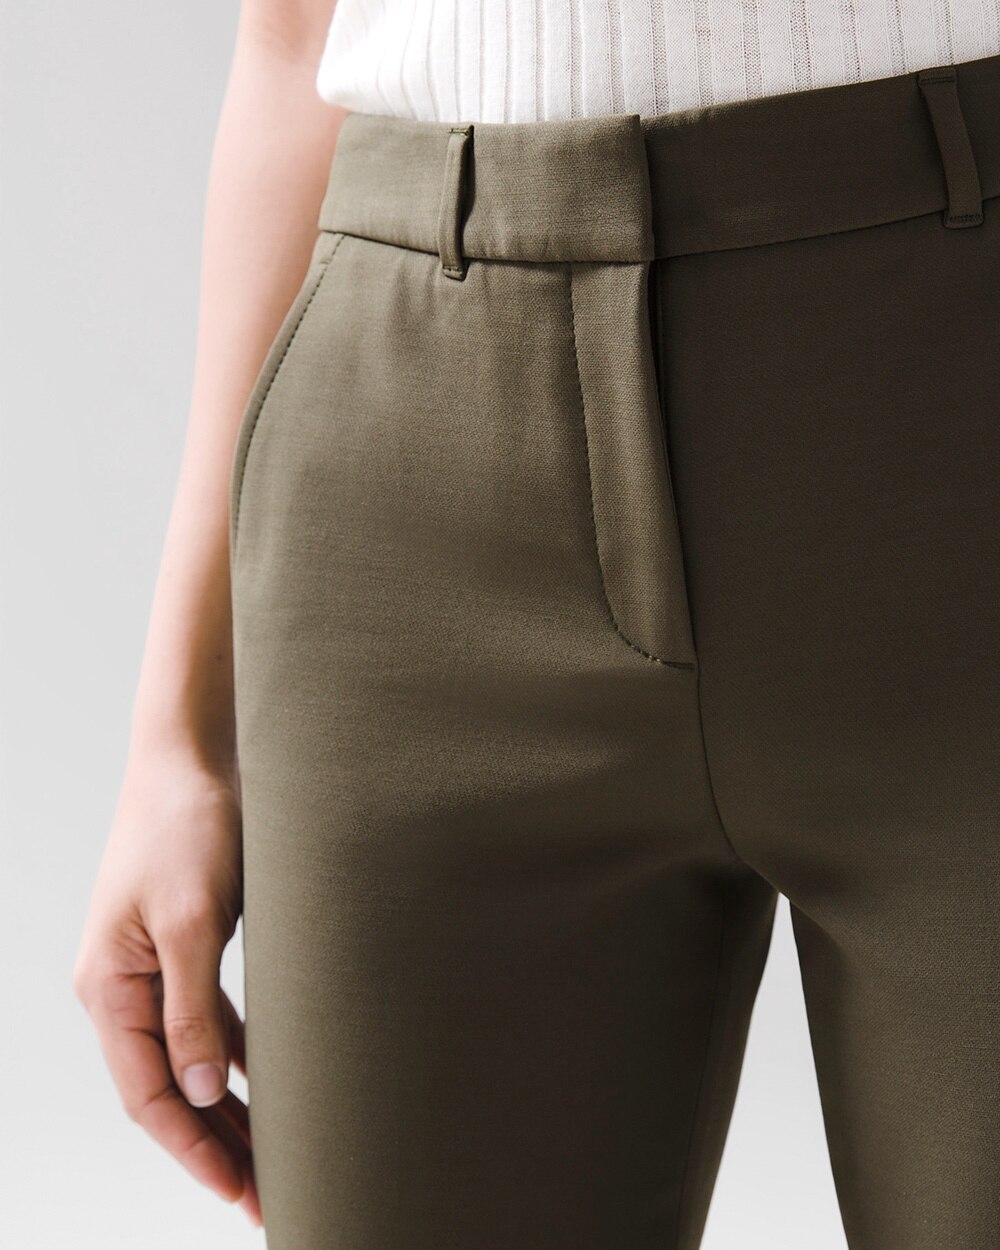 Louis Vuitton® Cargo Pants  Cargo trousers, Cargo pants, Pants